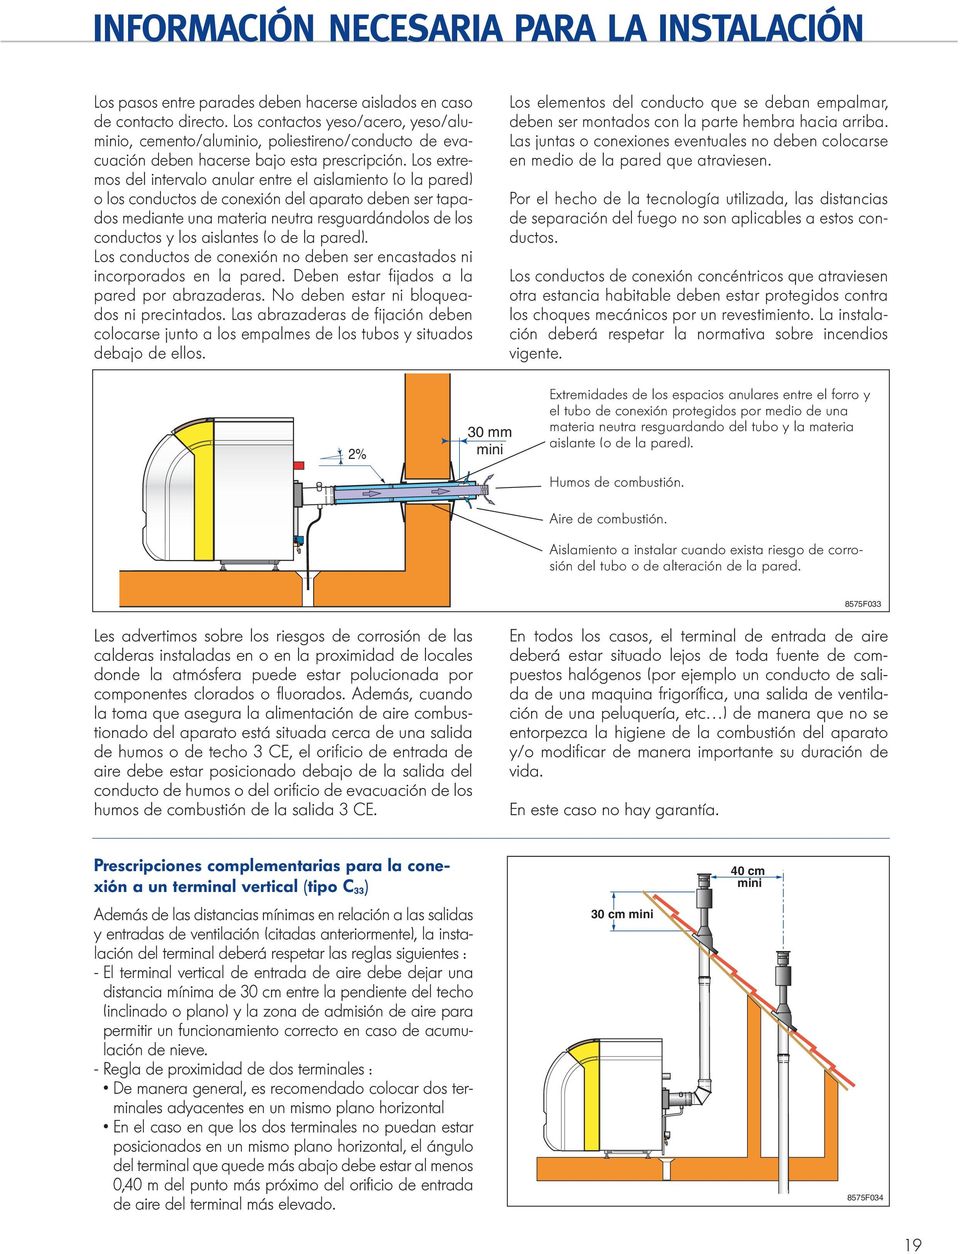 Los extremos del intervalo anular entre el aislamiento (o la pared) o los conductos de conexión del aparato deben ser tapados mediante una materia neutra resguardándolos de los conductos y los